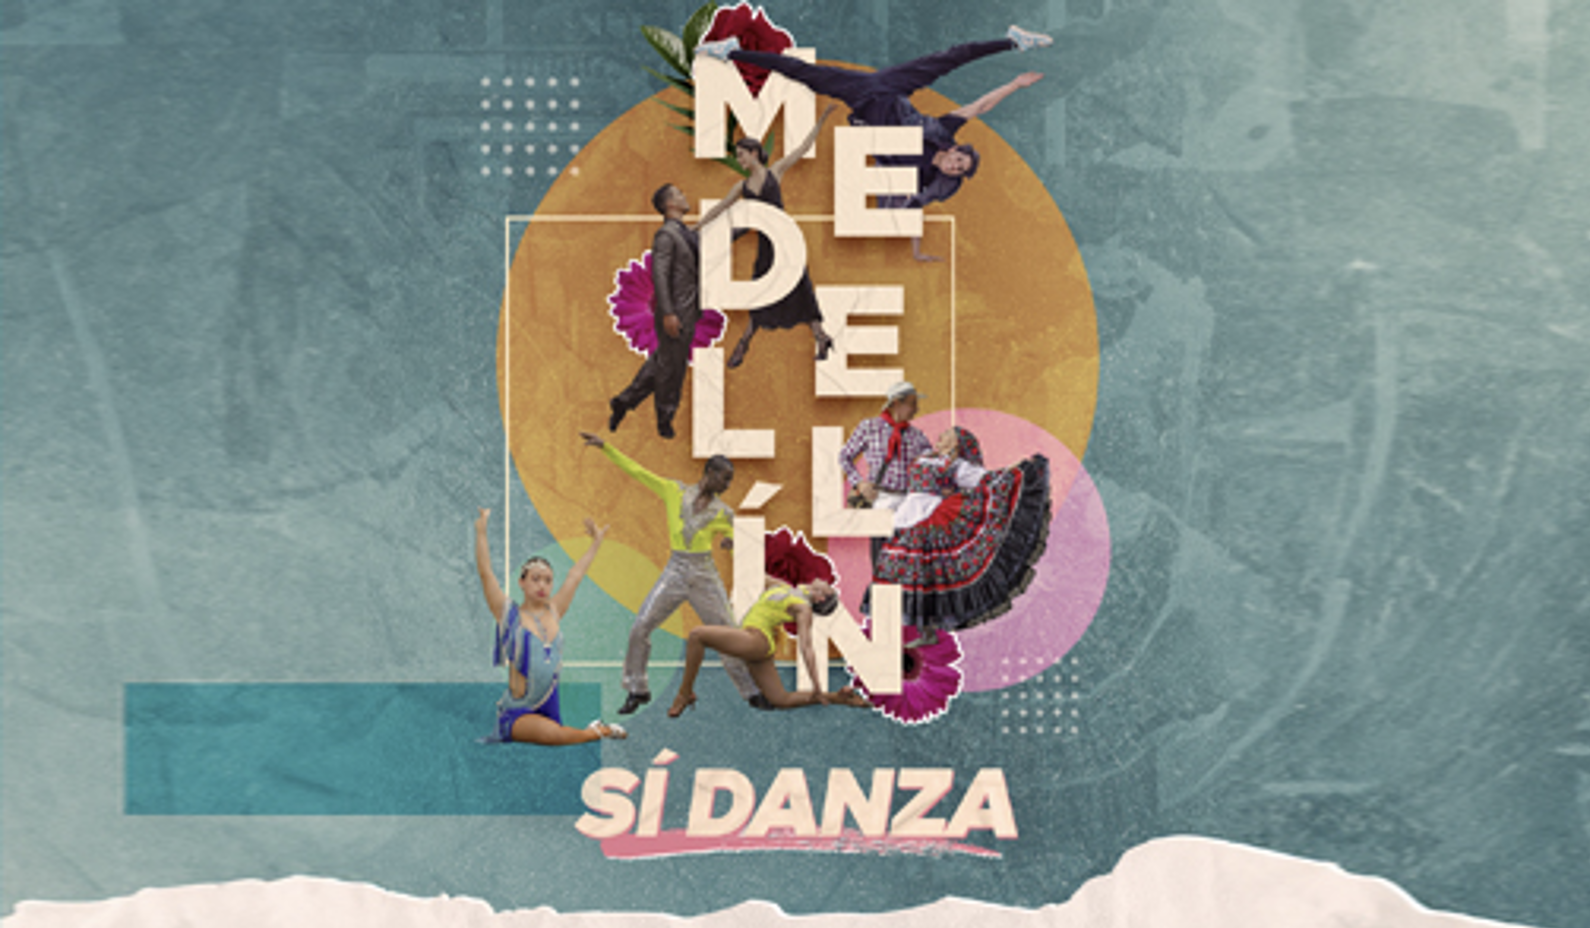 Medellín sí danza